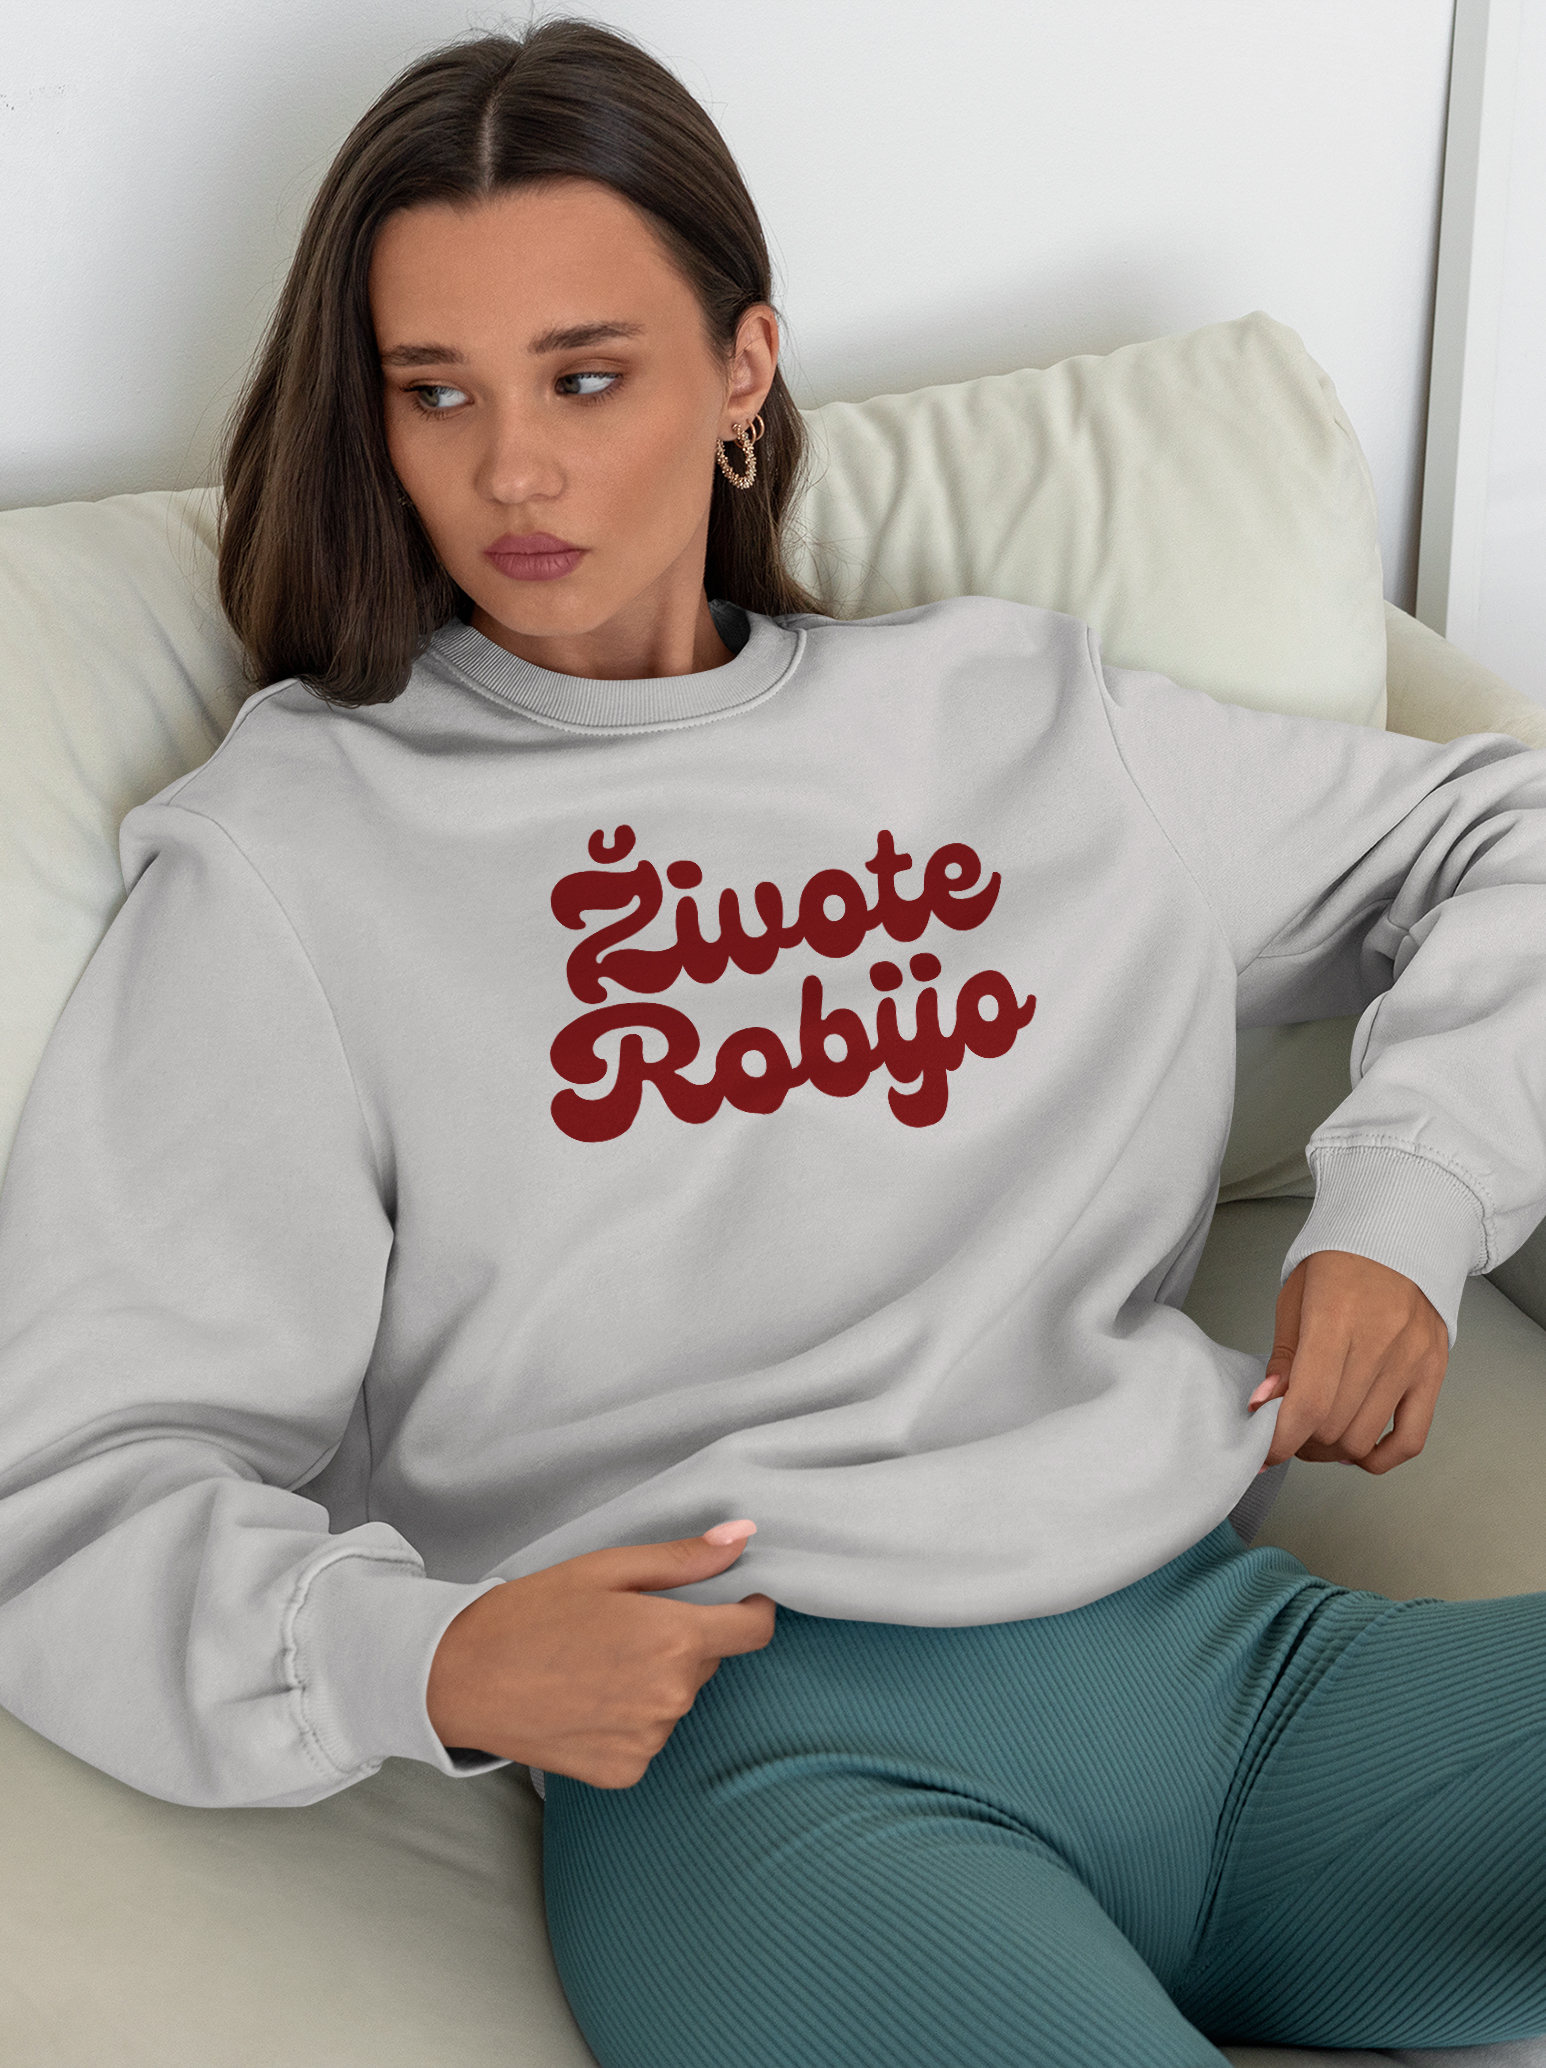 Zivote-Robijo-3d-puff-sweatshirt